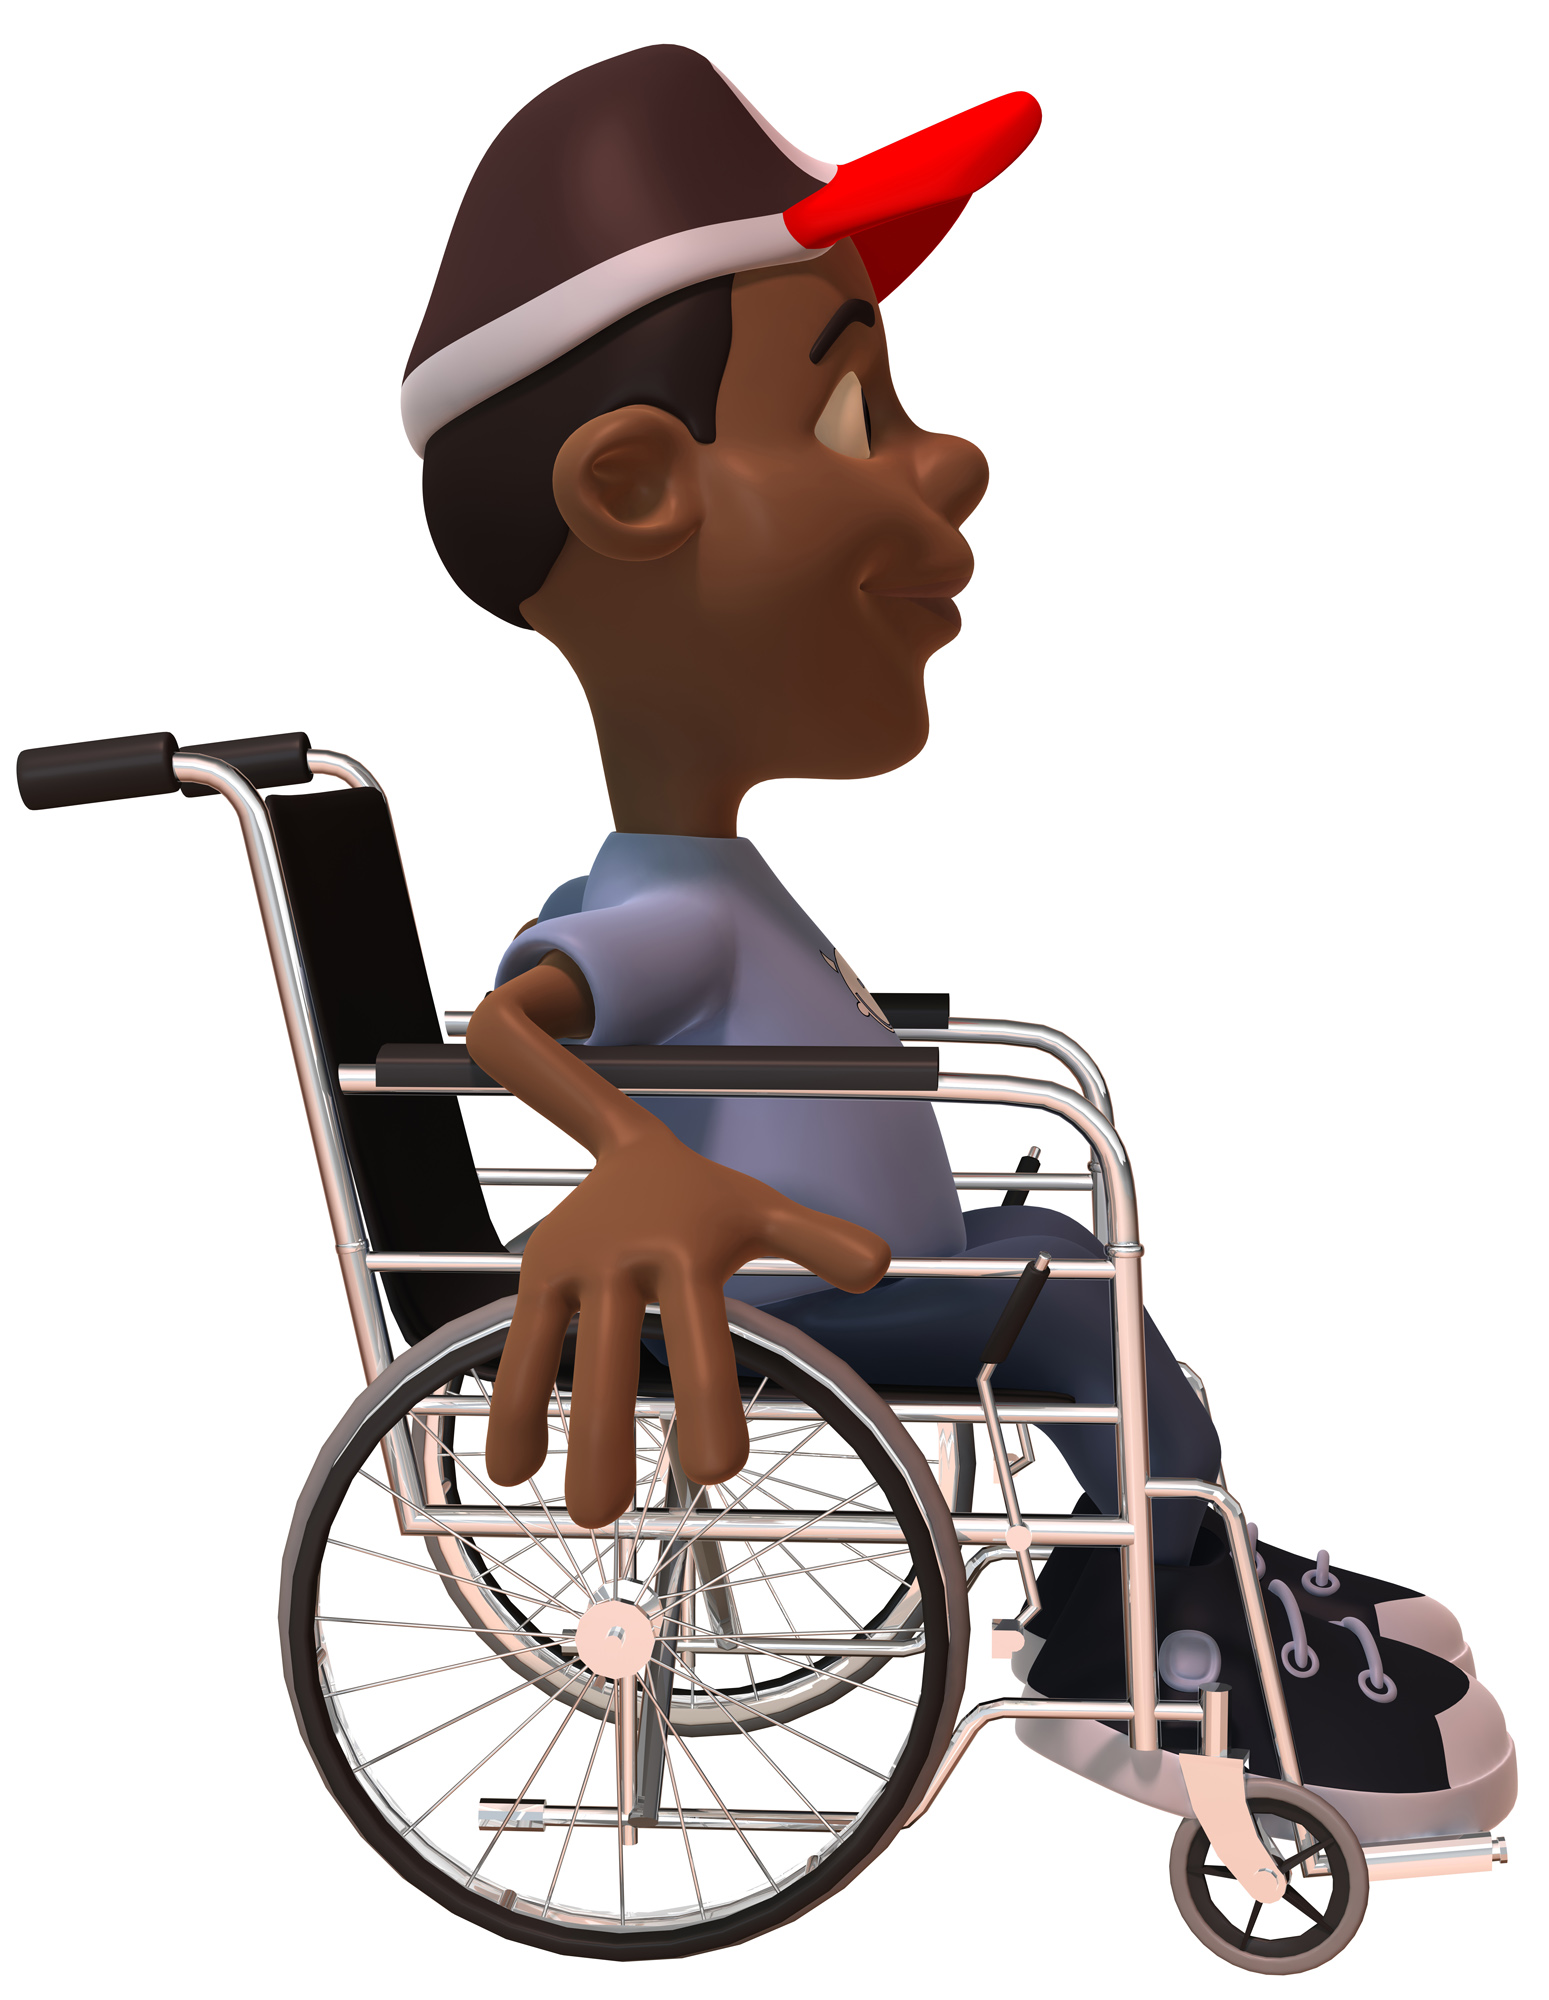 Kid in a wheelchair photo